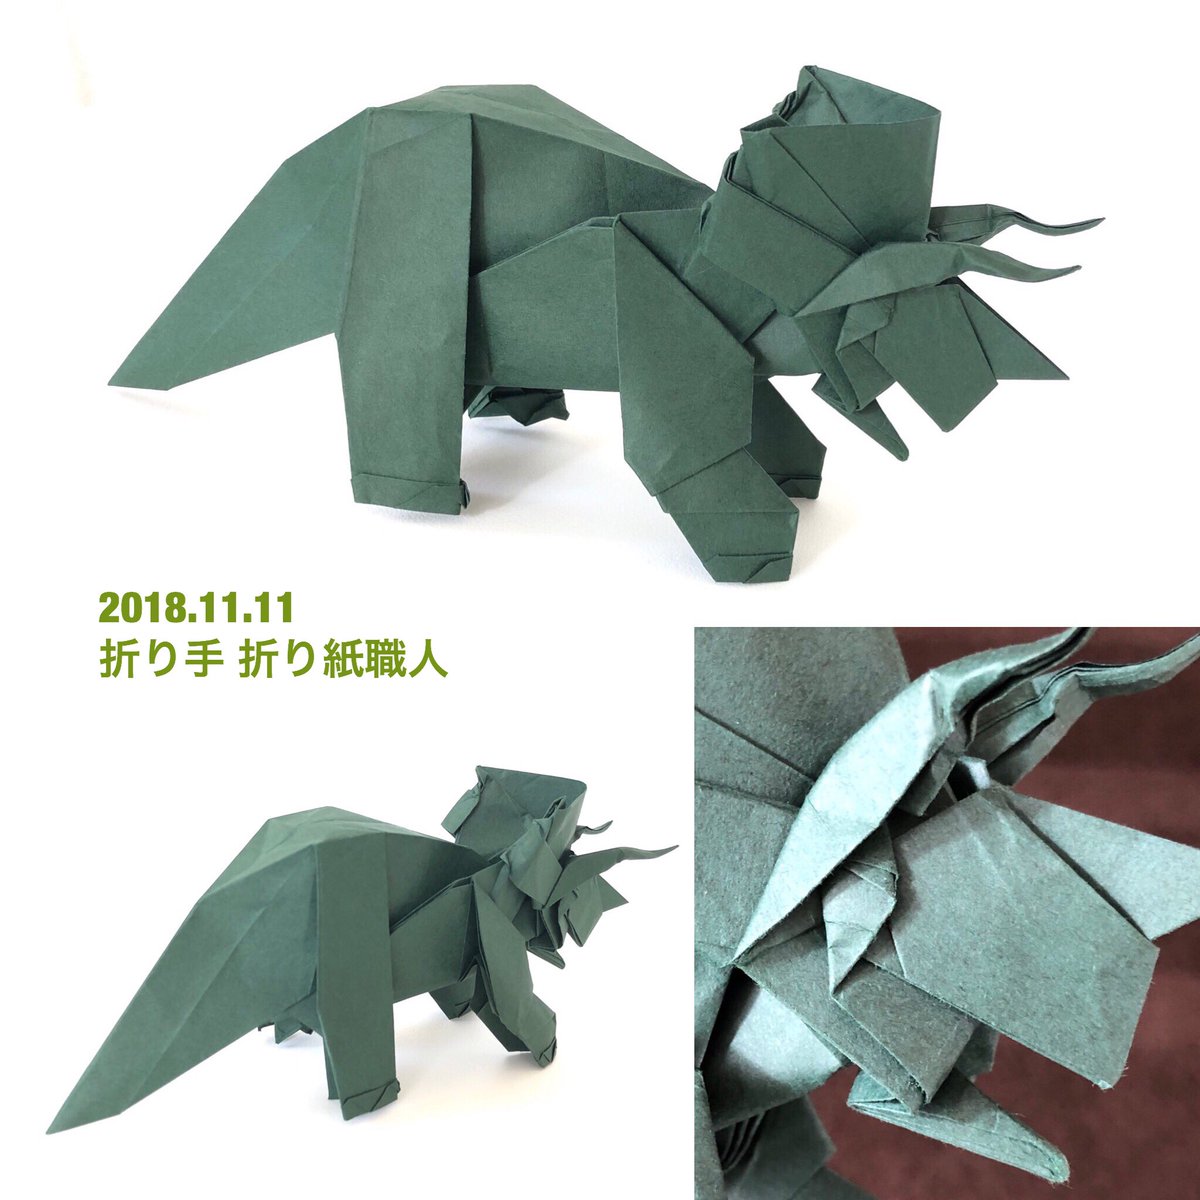 折り紙職人 トリケラトプス 川畑文昭さん Triceratops Fumiaki Kawahata 川畑文昭作品集より 35 ビオトープ使用 それほど難しくなく これだけ立体的でカッコいいトリケラトプスは初めて 特に目 右下の写真参考 が好み 折り紙作品